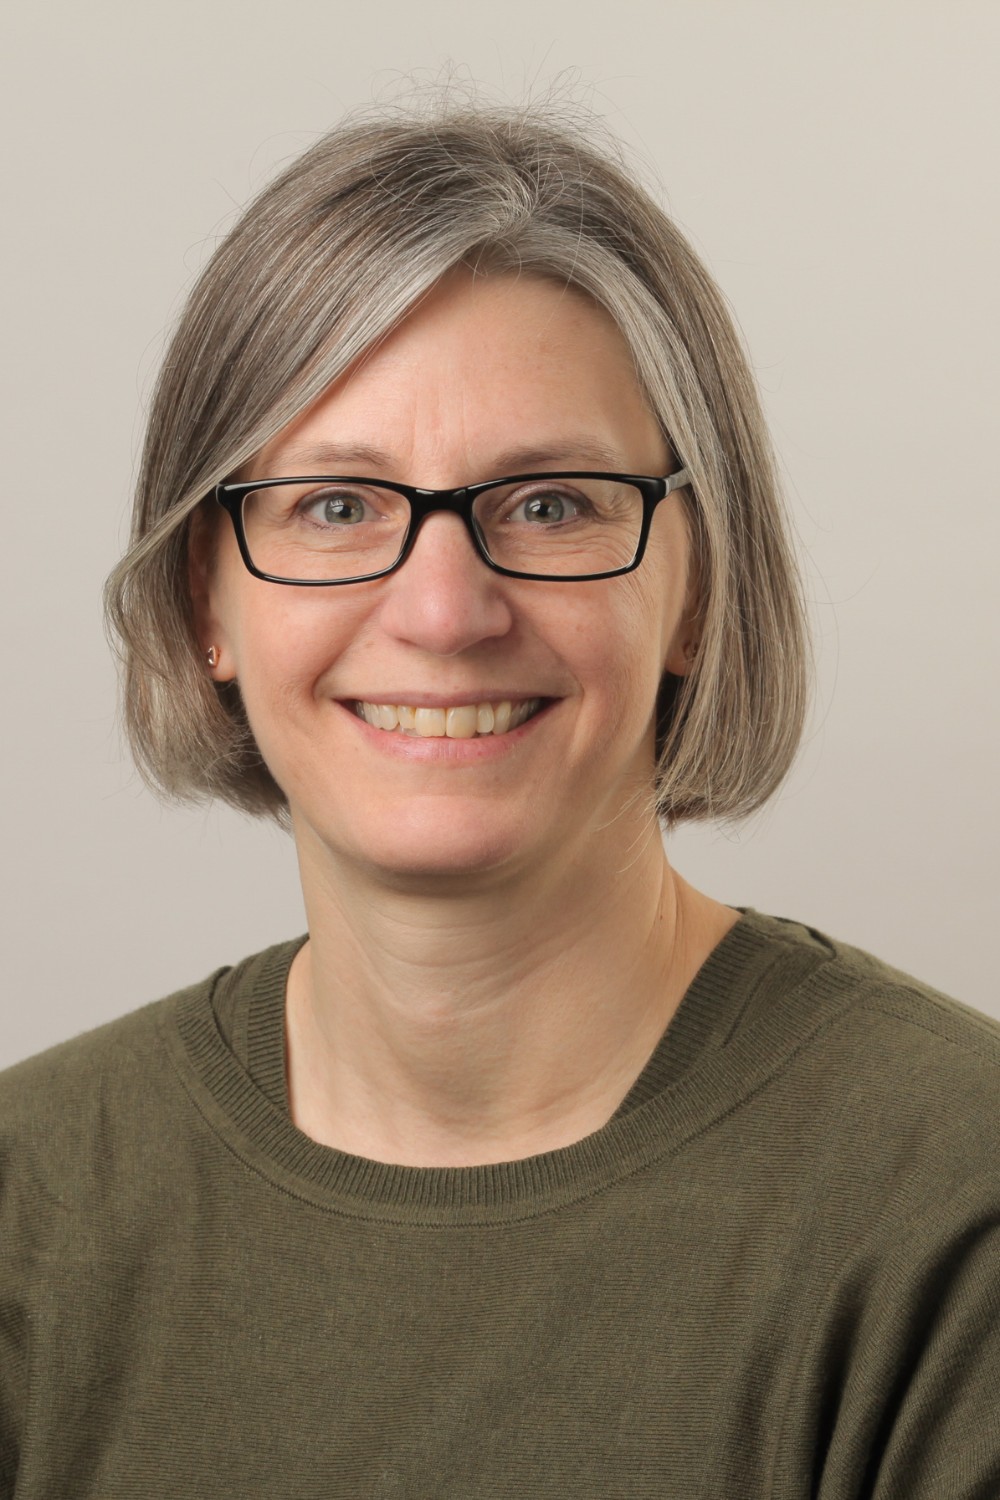 Kathryn Garber, PhD